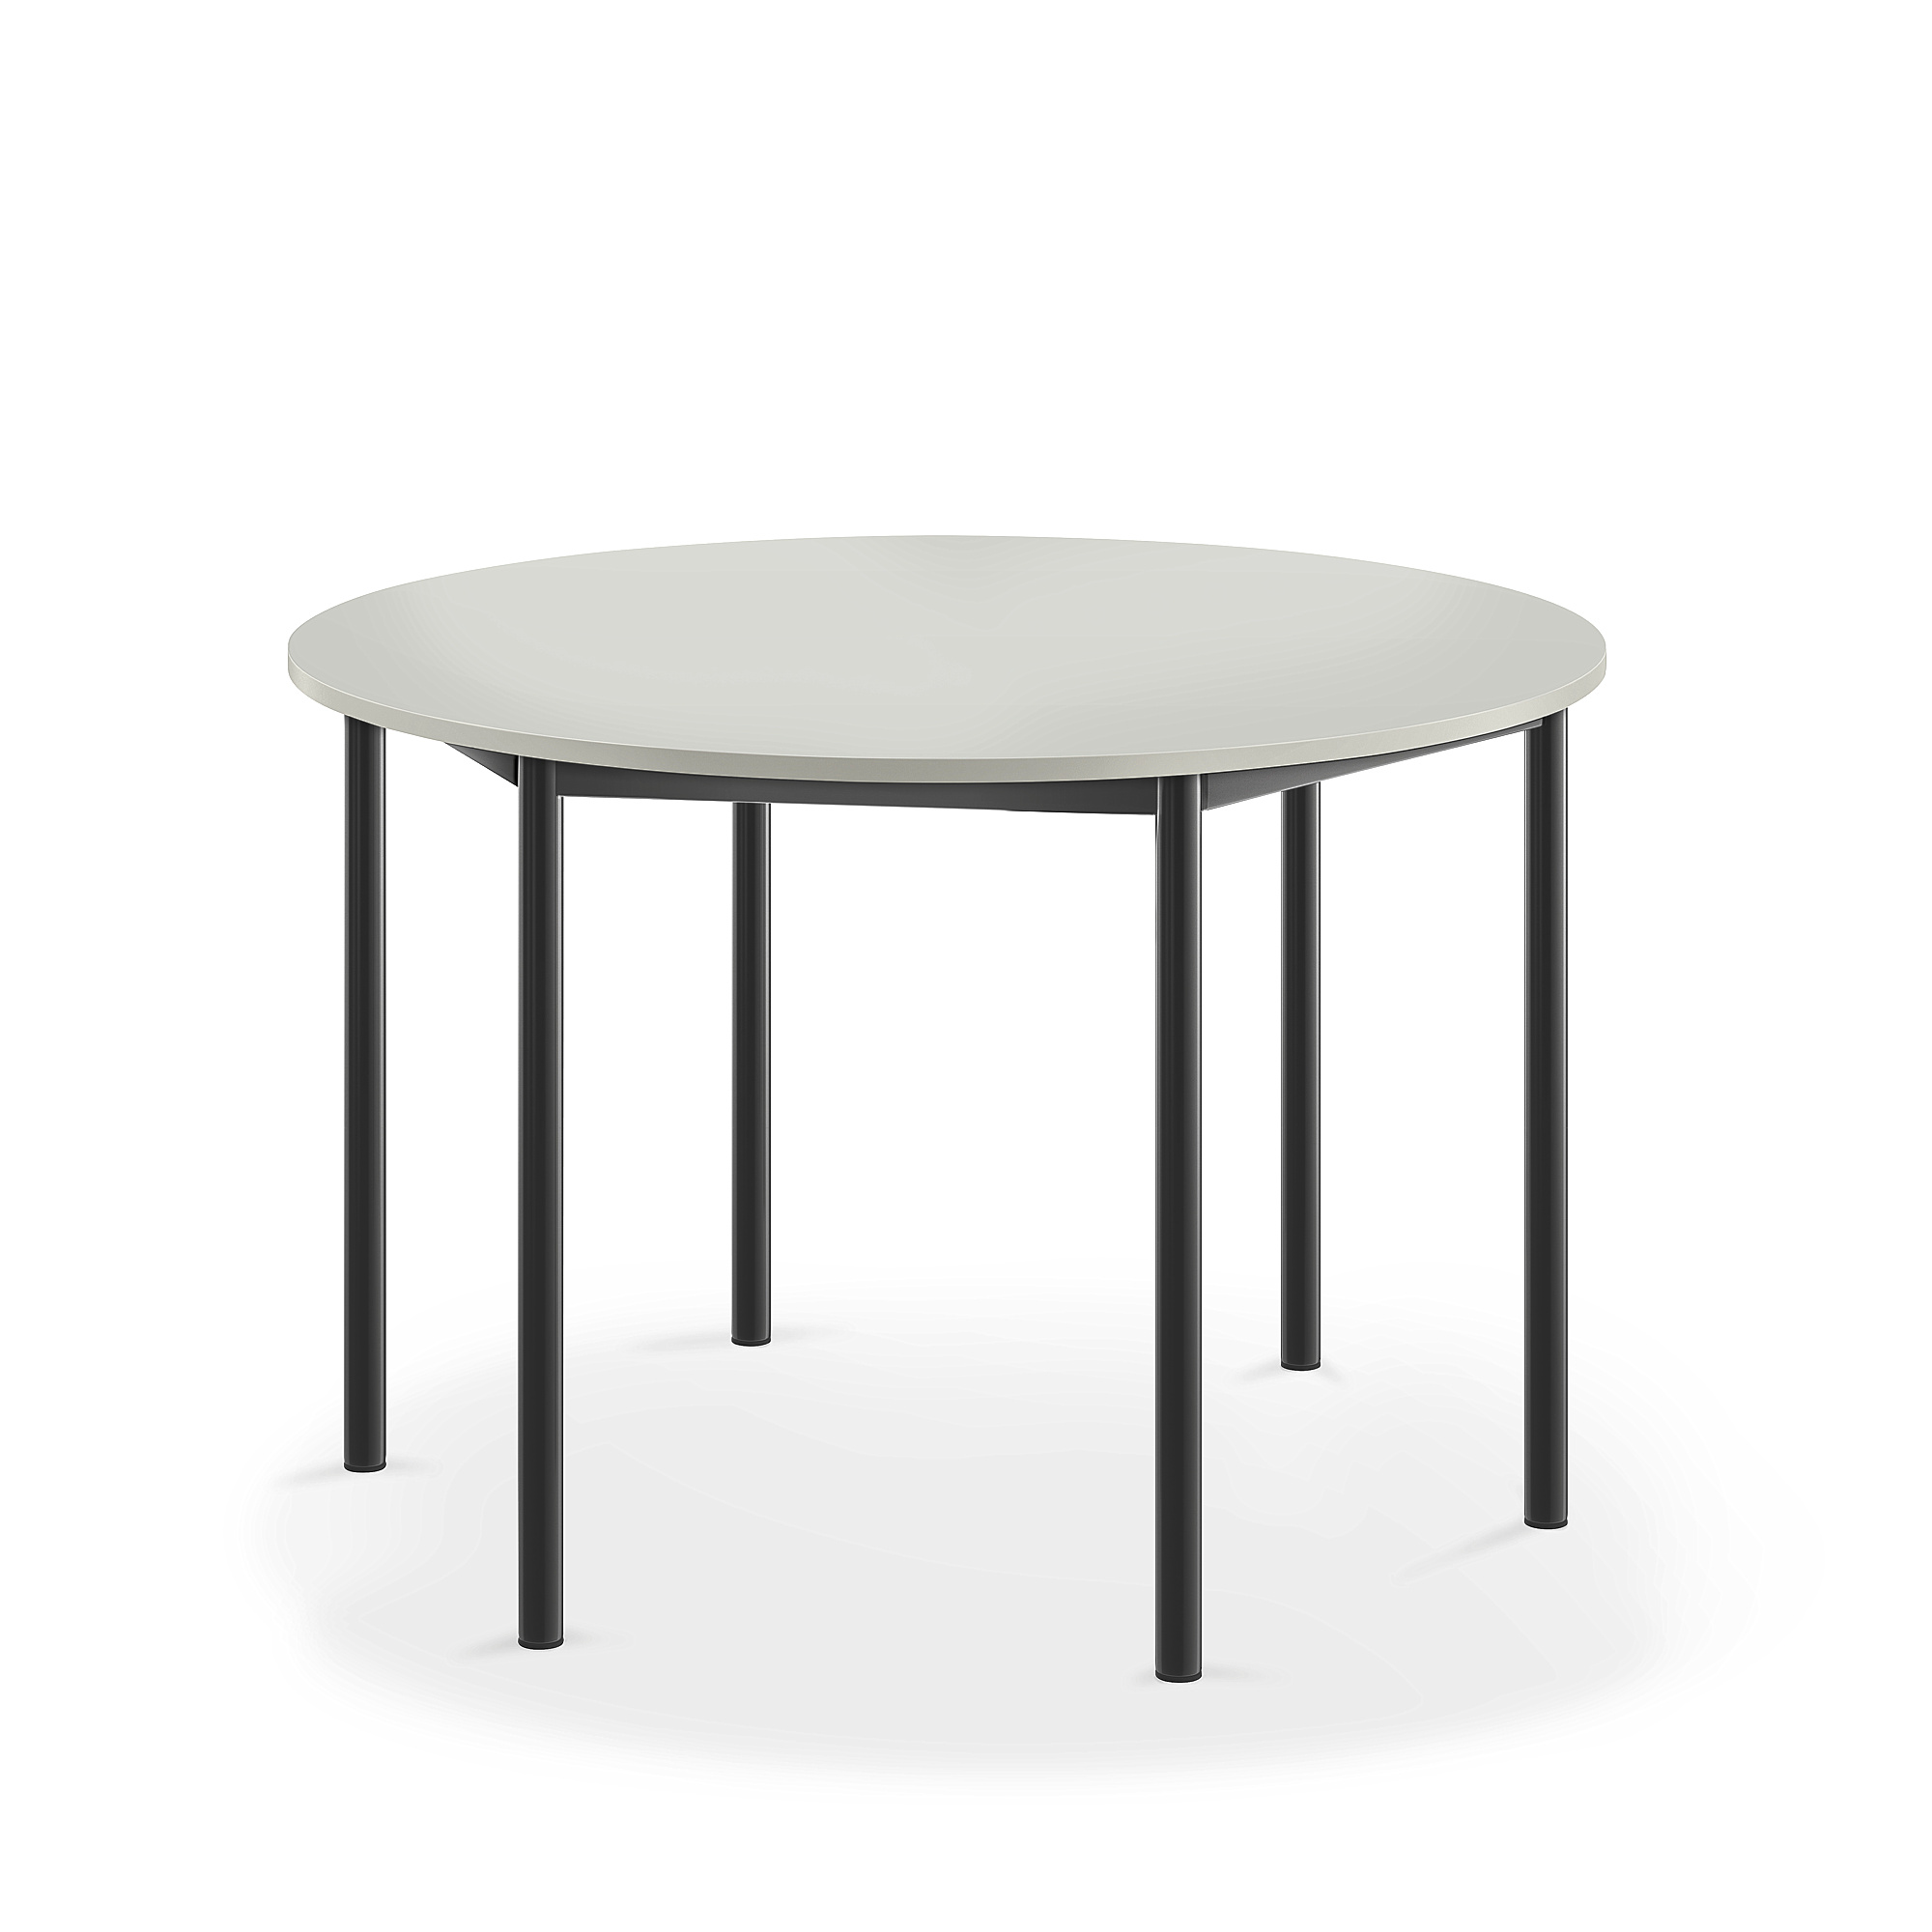 Stůl BORÅS, Ø1200x760 mm, antracitově šedé nohy, HPL deska, šedá